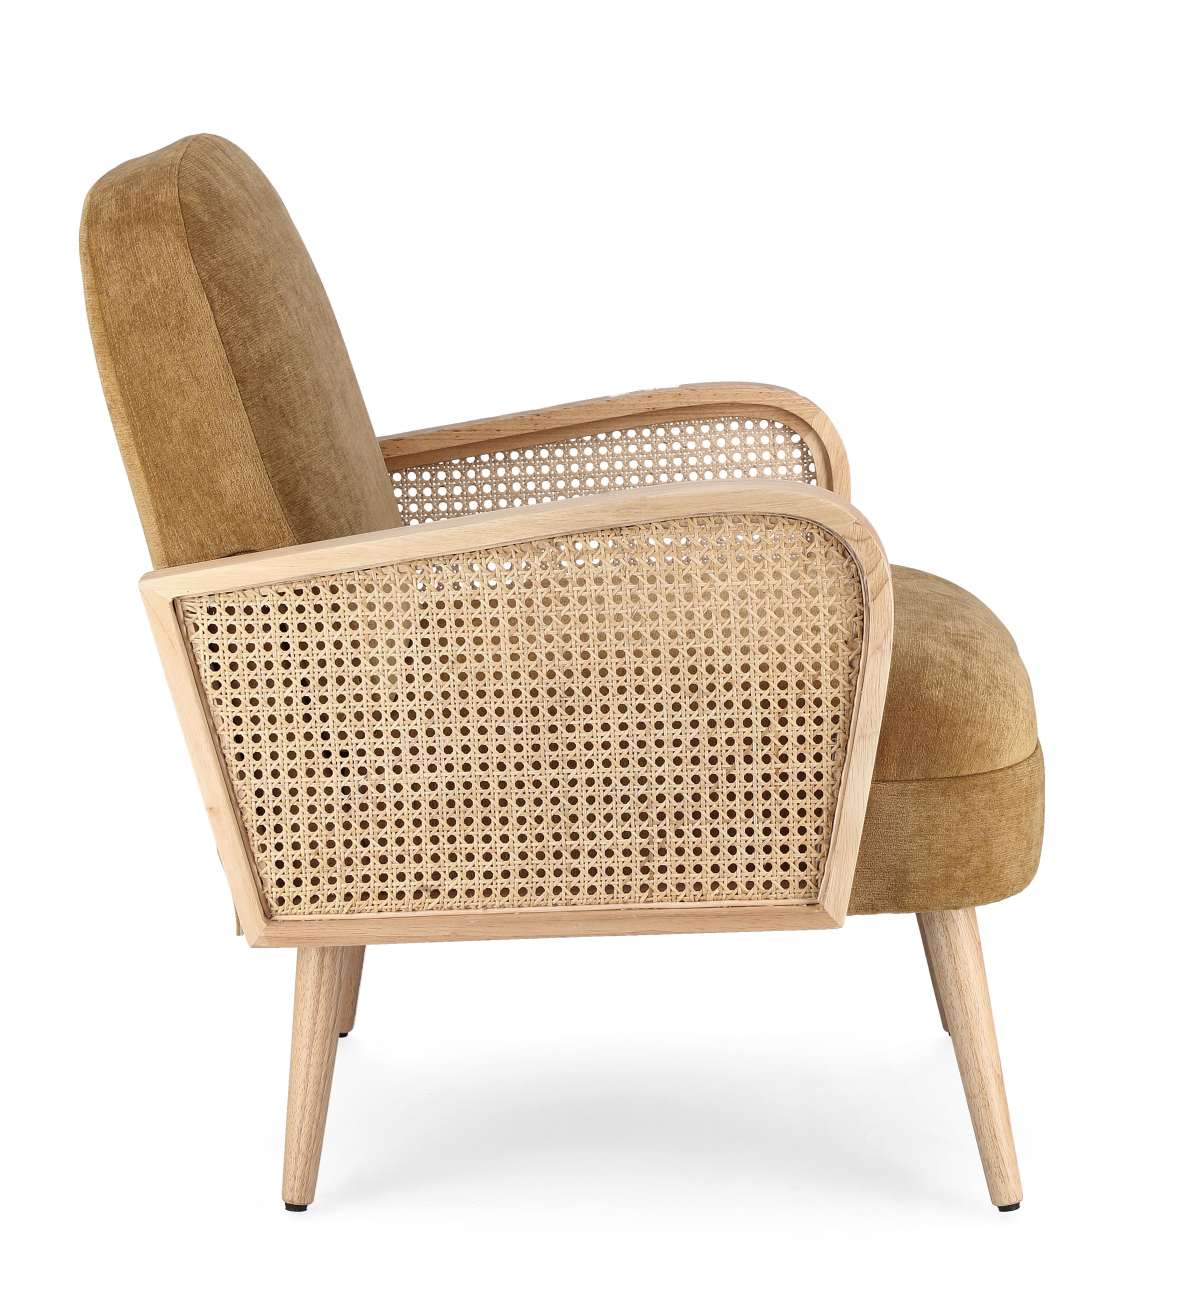 Der Sessel Dalida überzeugt mit seinem modernen Stil. Gefertigt wurde er aus einem Stoff-Bezug, welcher einen Senf Farbton besitzt. Das Gestell ist aus Kautschukholz und hat eine natürliche Farbe. Der Sessel verfügt über eine Armlehne.